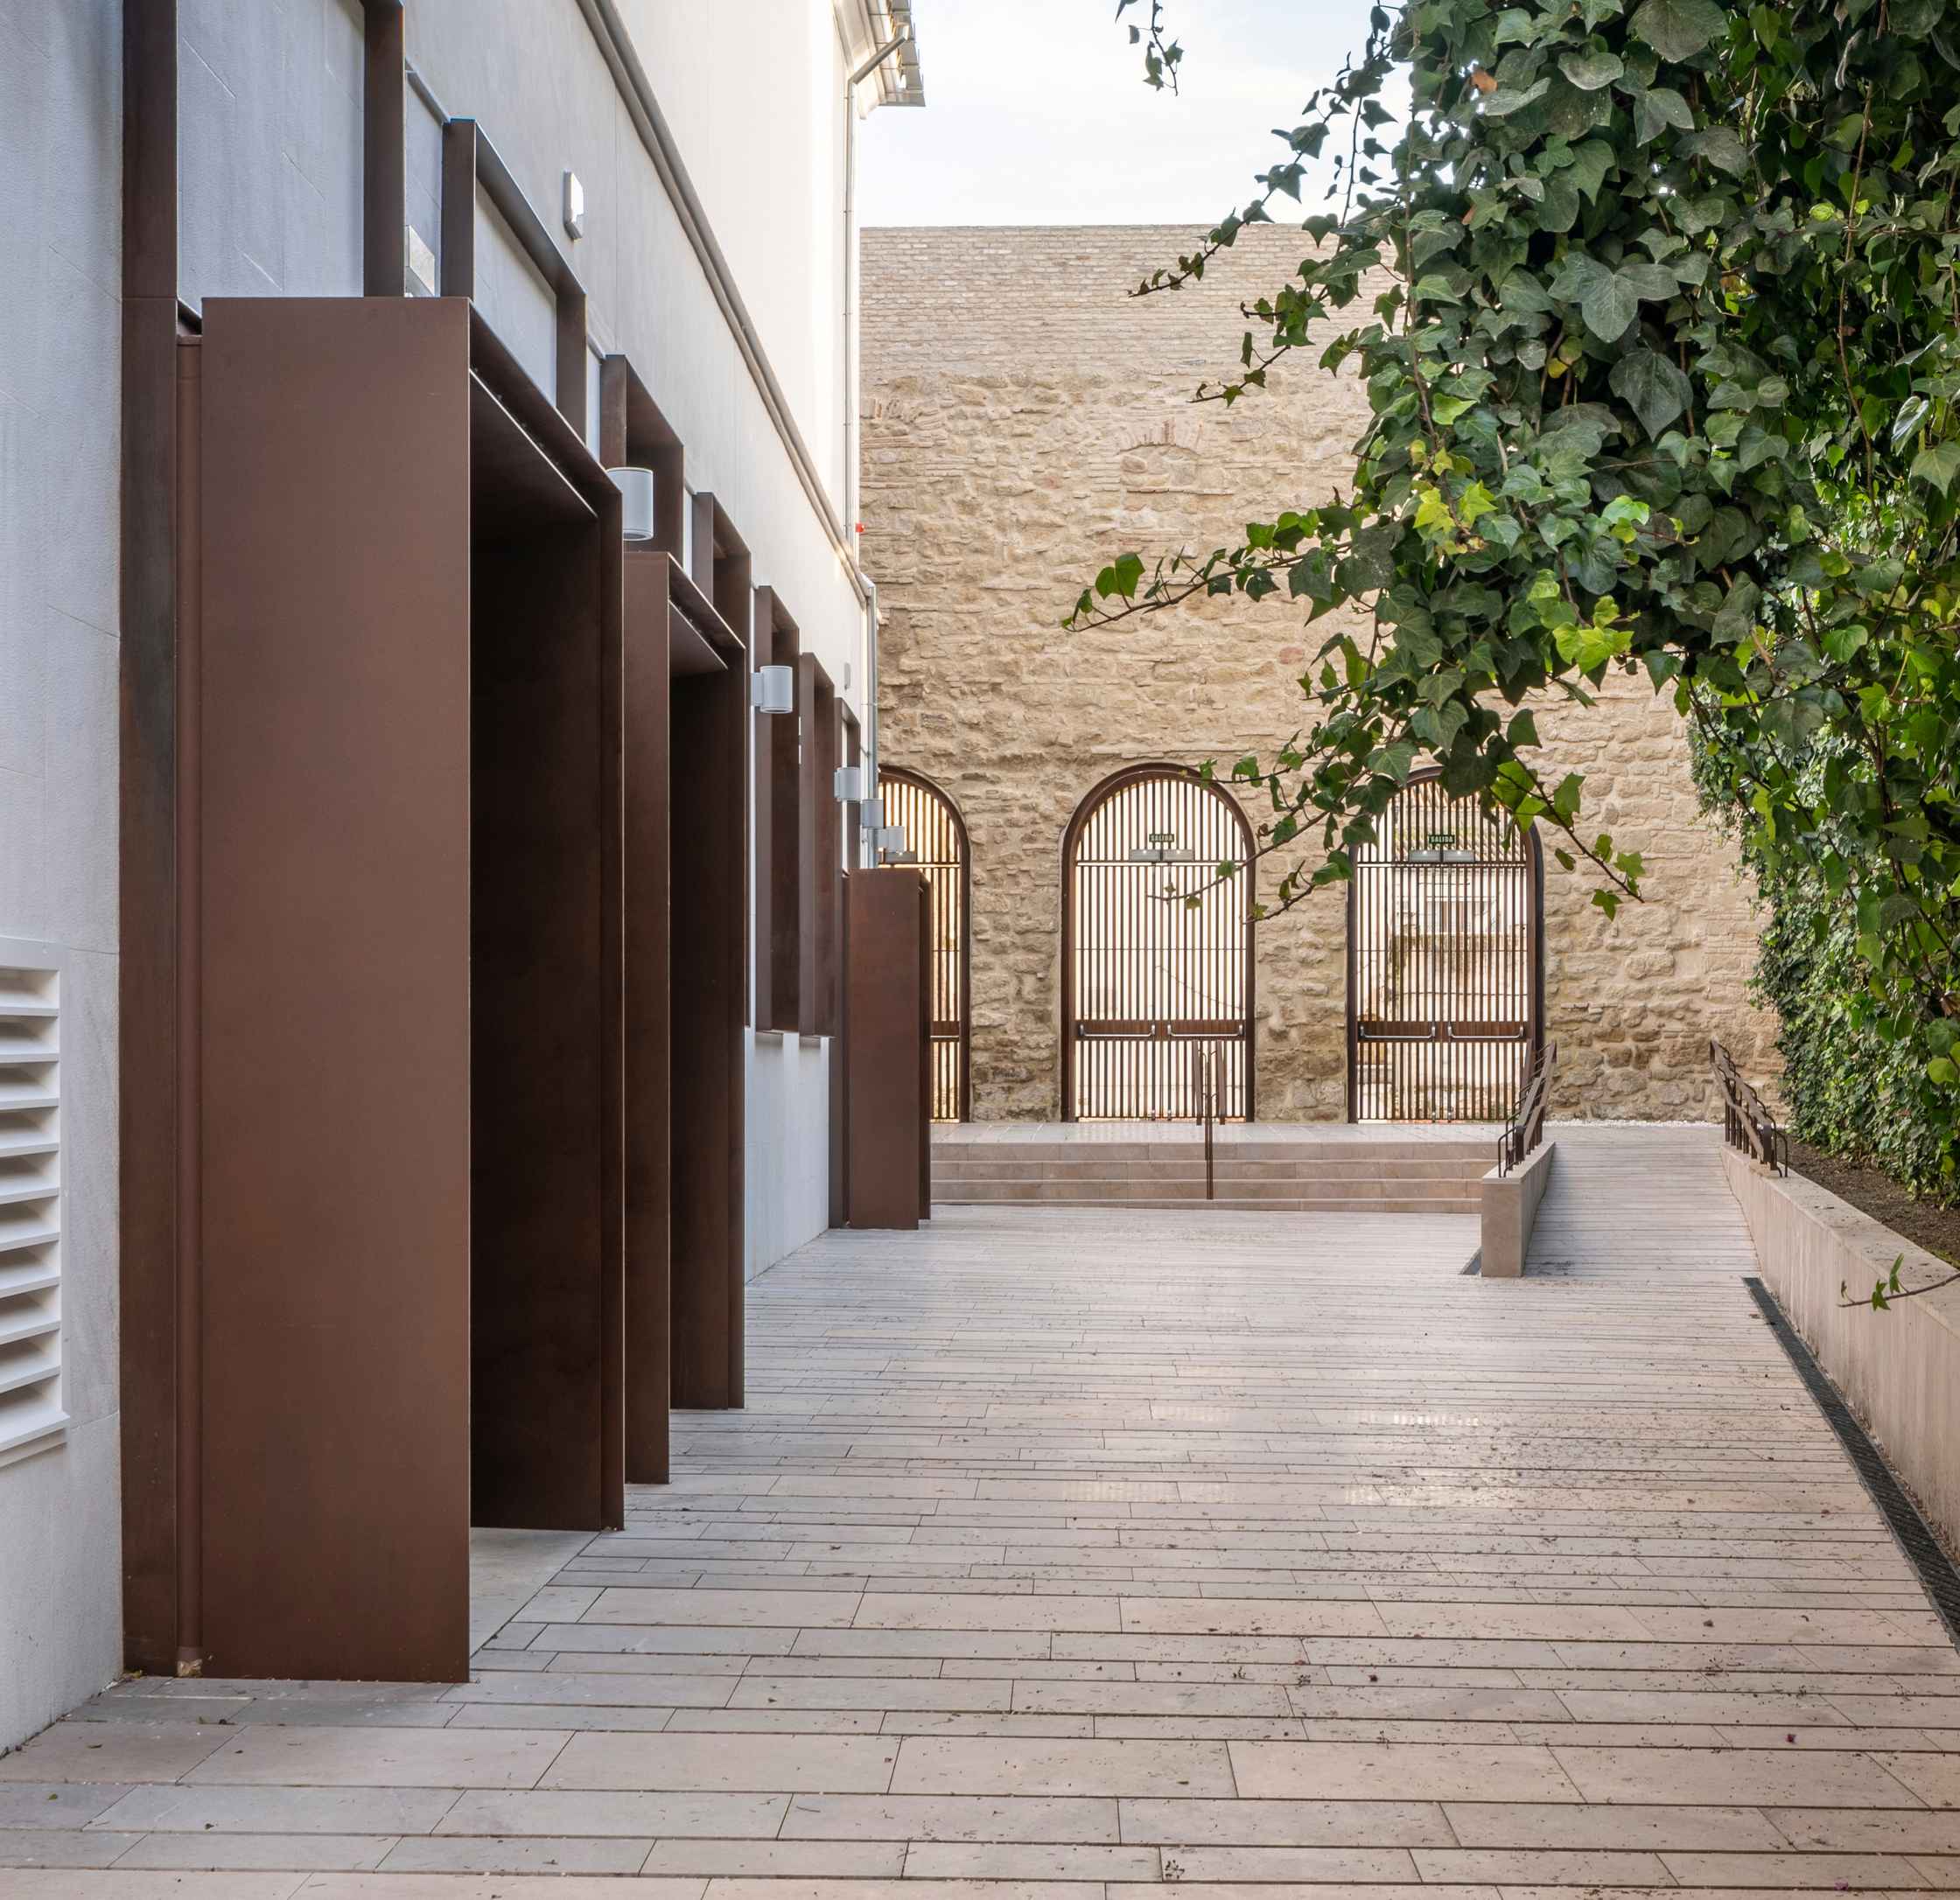 Patio Adarve del Palacio de Congresos, un espacio de arquitectura contemporánea en pleno corazón de la judería, junto a la Mezquita-Catedral de Córdoba (España). Proyecto: LAP arquitectos